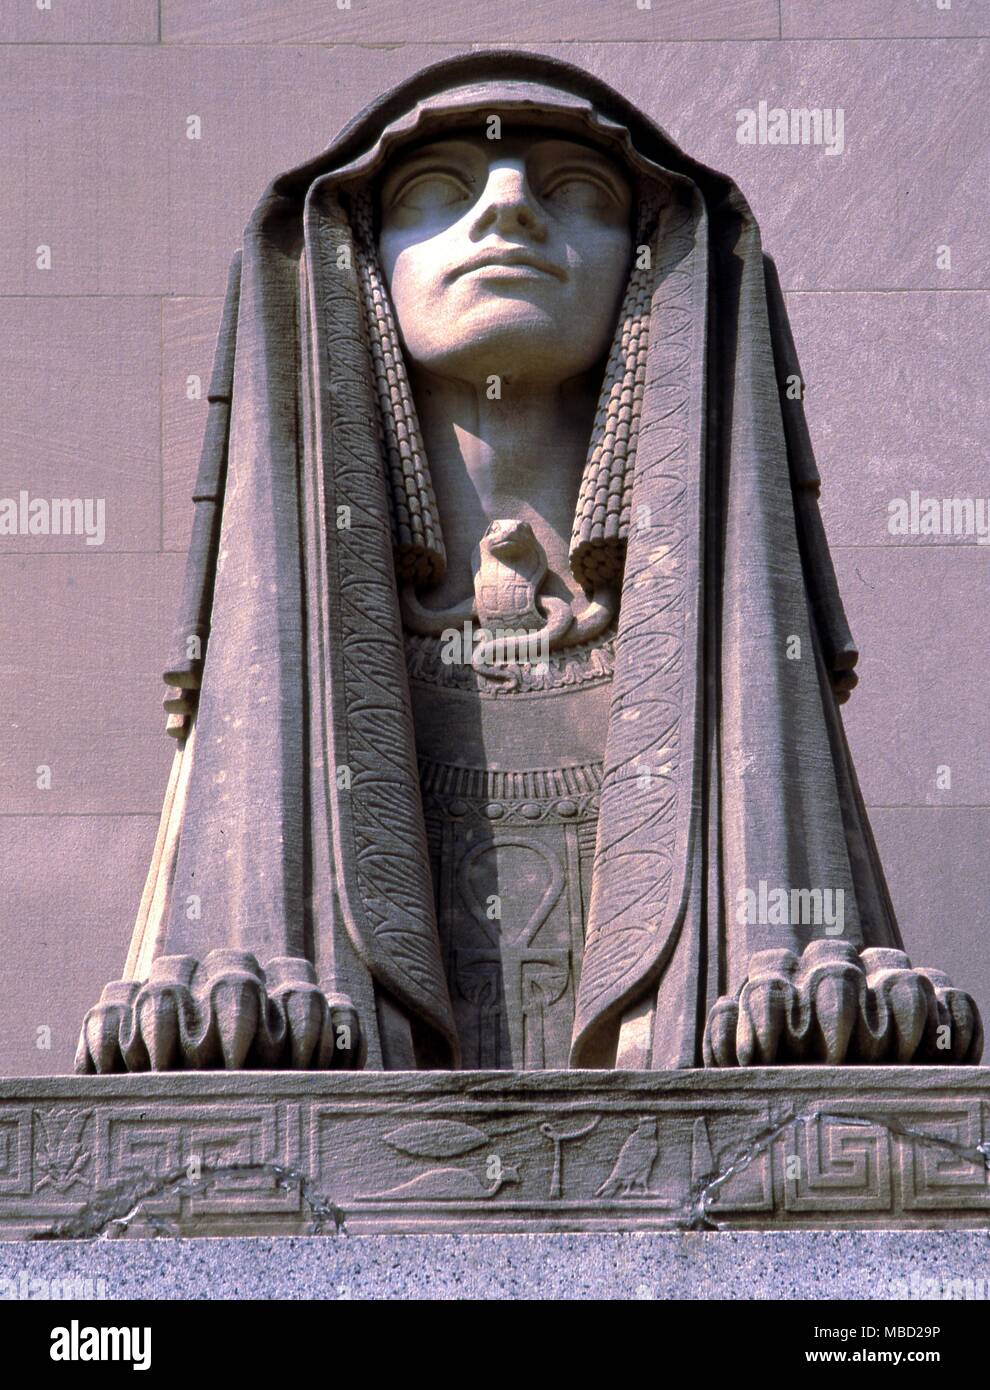 Tempio massonico a Washington DC. Testa del Guardian sphinx davanti alla Loggia massonica riti scozzese Tempio. Questo uno sulla sinistra, con gli occhi aperti, rappresenta il potere. Foto Stock